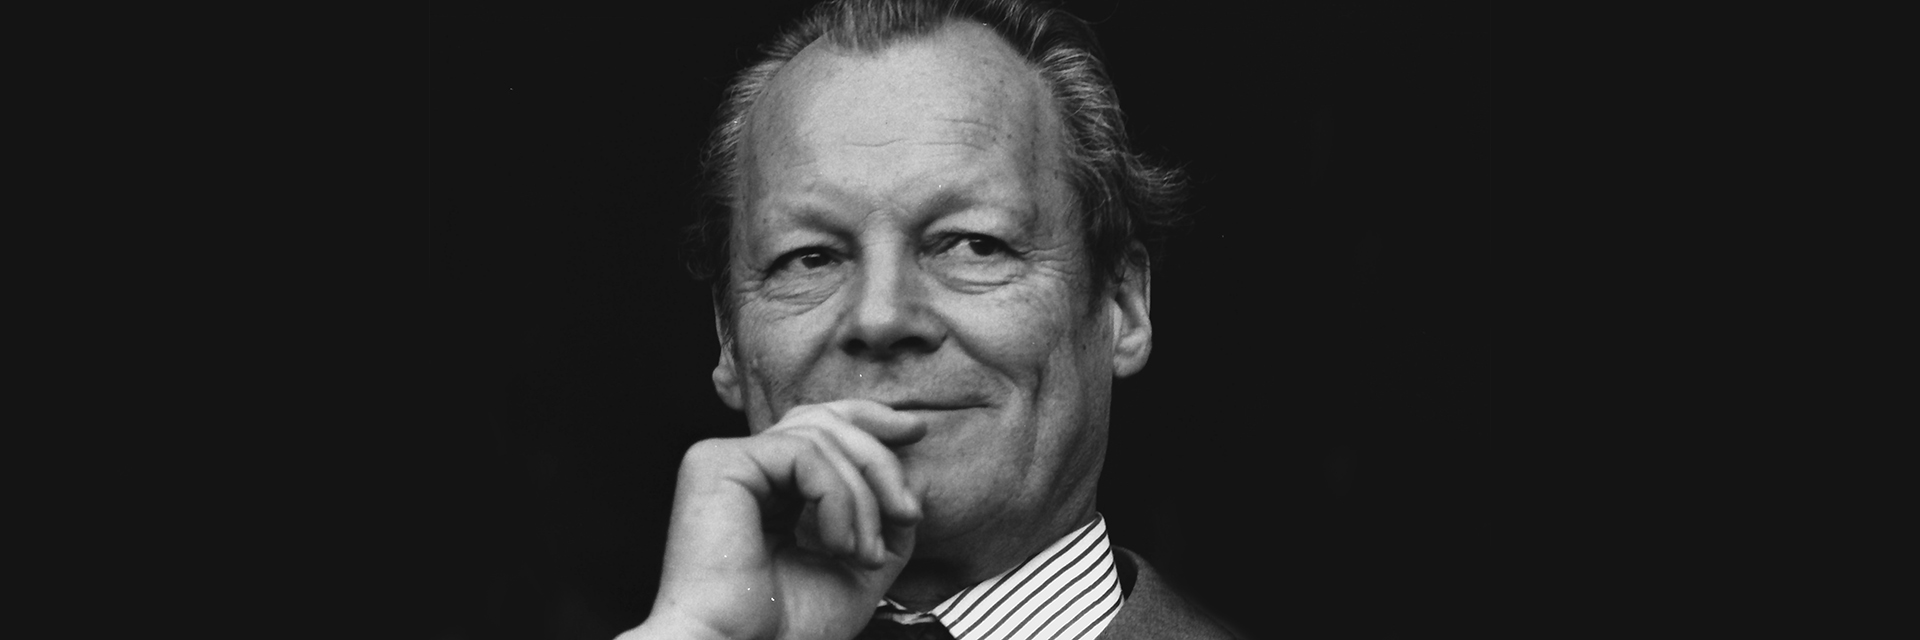 Willy Brandt. | Bildquelle: WDR/picture alliance/Fritz Rust